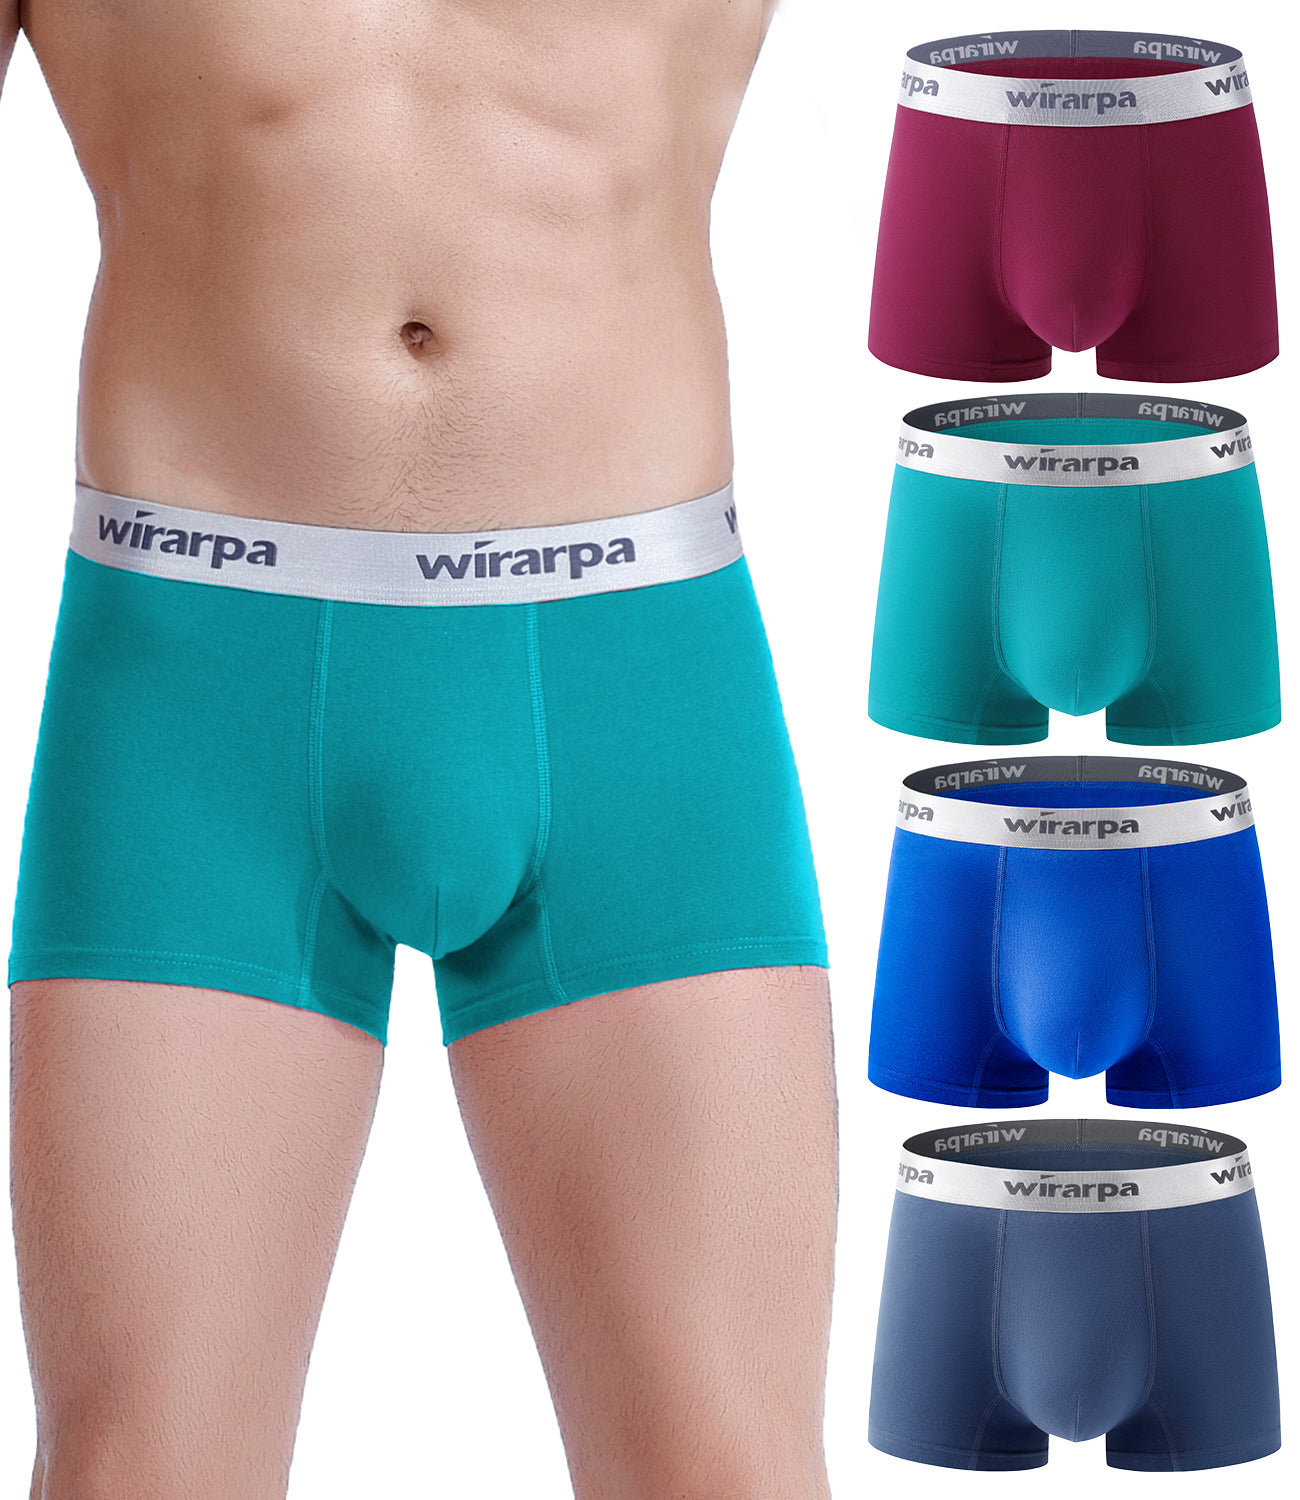 wirarpa cotton underwear trunks